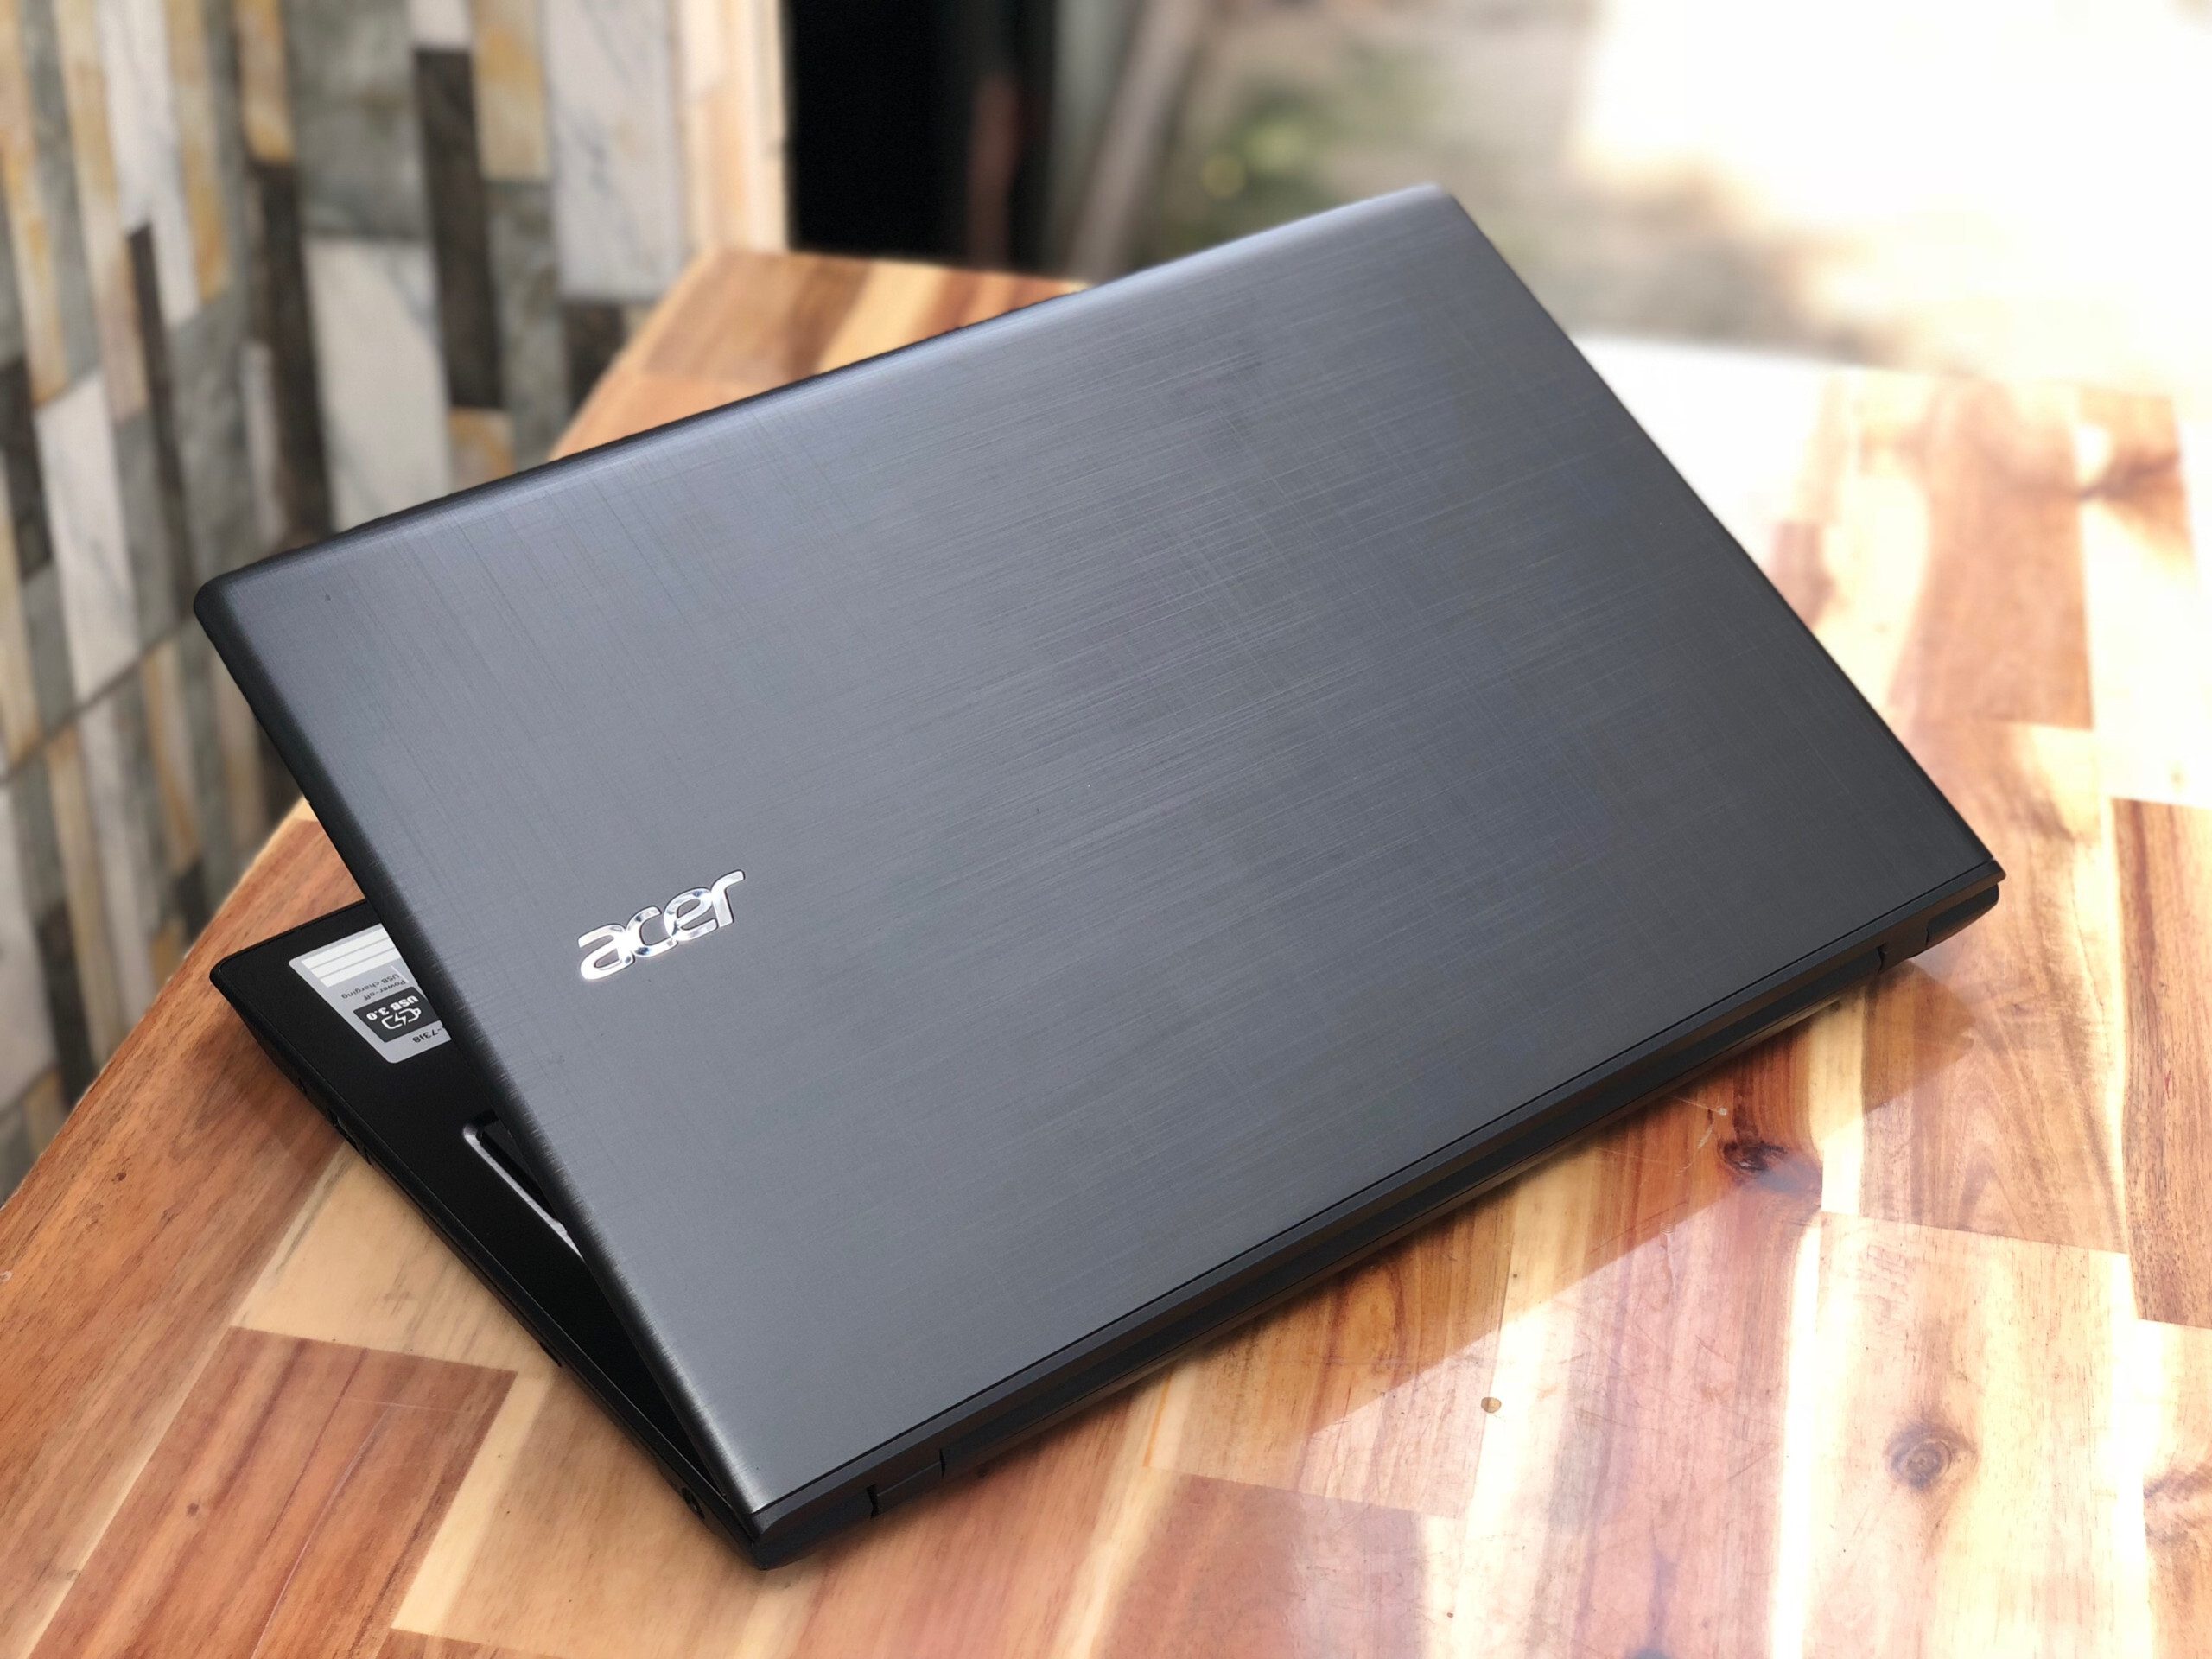 Laptop Acer Aspire E5-575G-39QW NX.GDWSV.005 - Intel core i3-7100U, 4GB RAM, HDD 500GB, Nvidia GeForce 940MX 2GB GDDR5, 15.6 inch